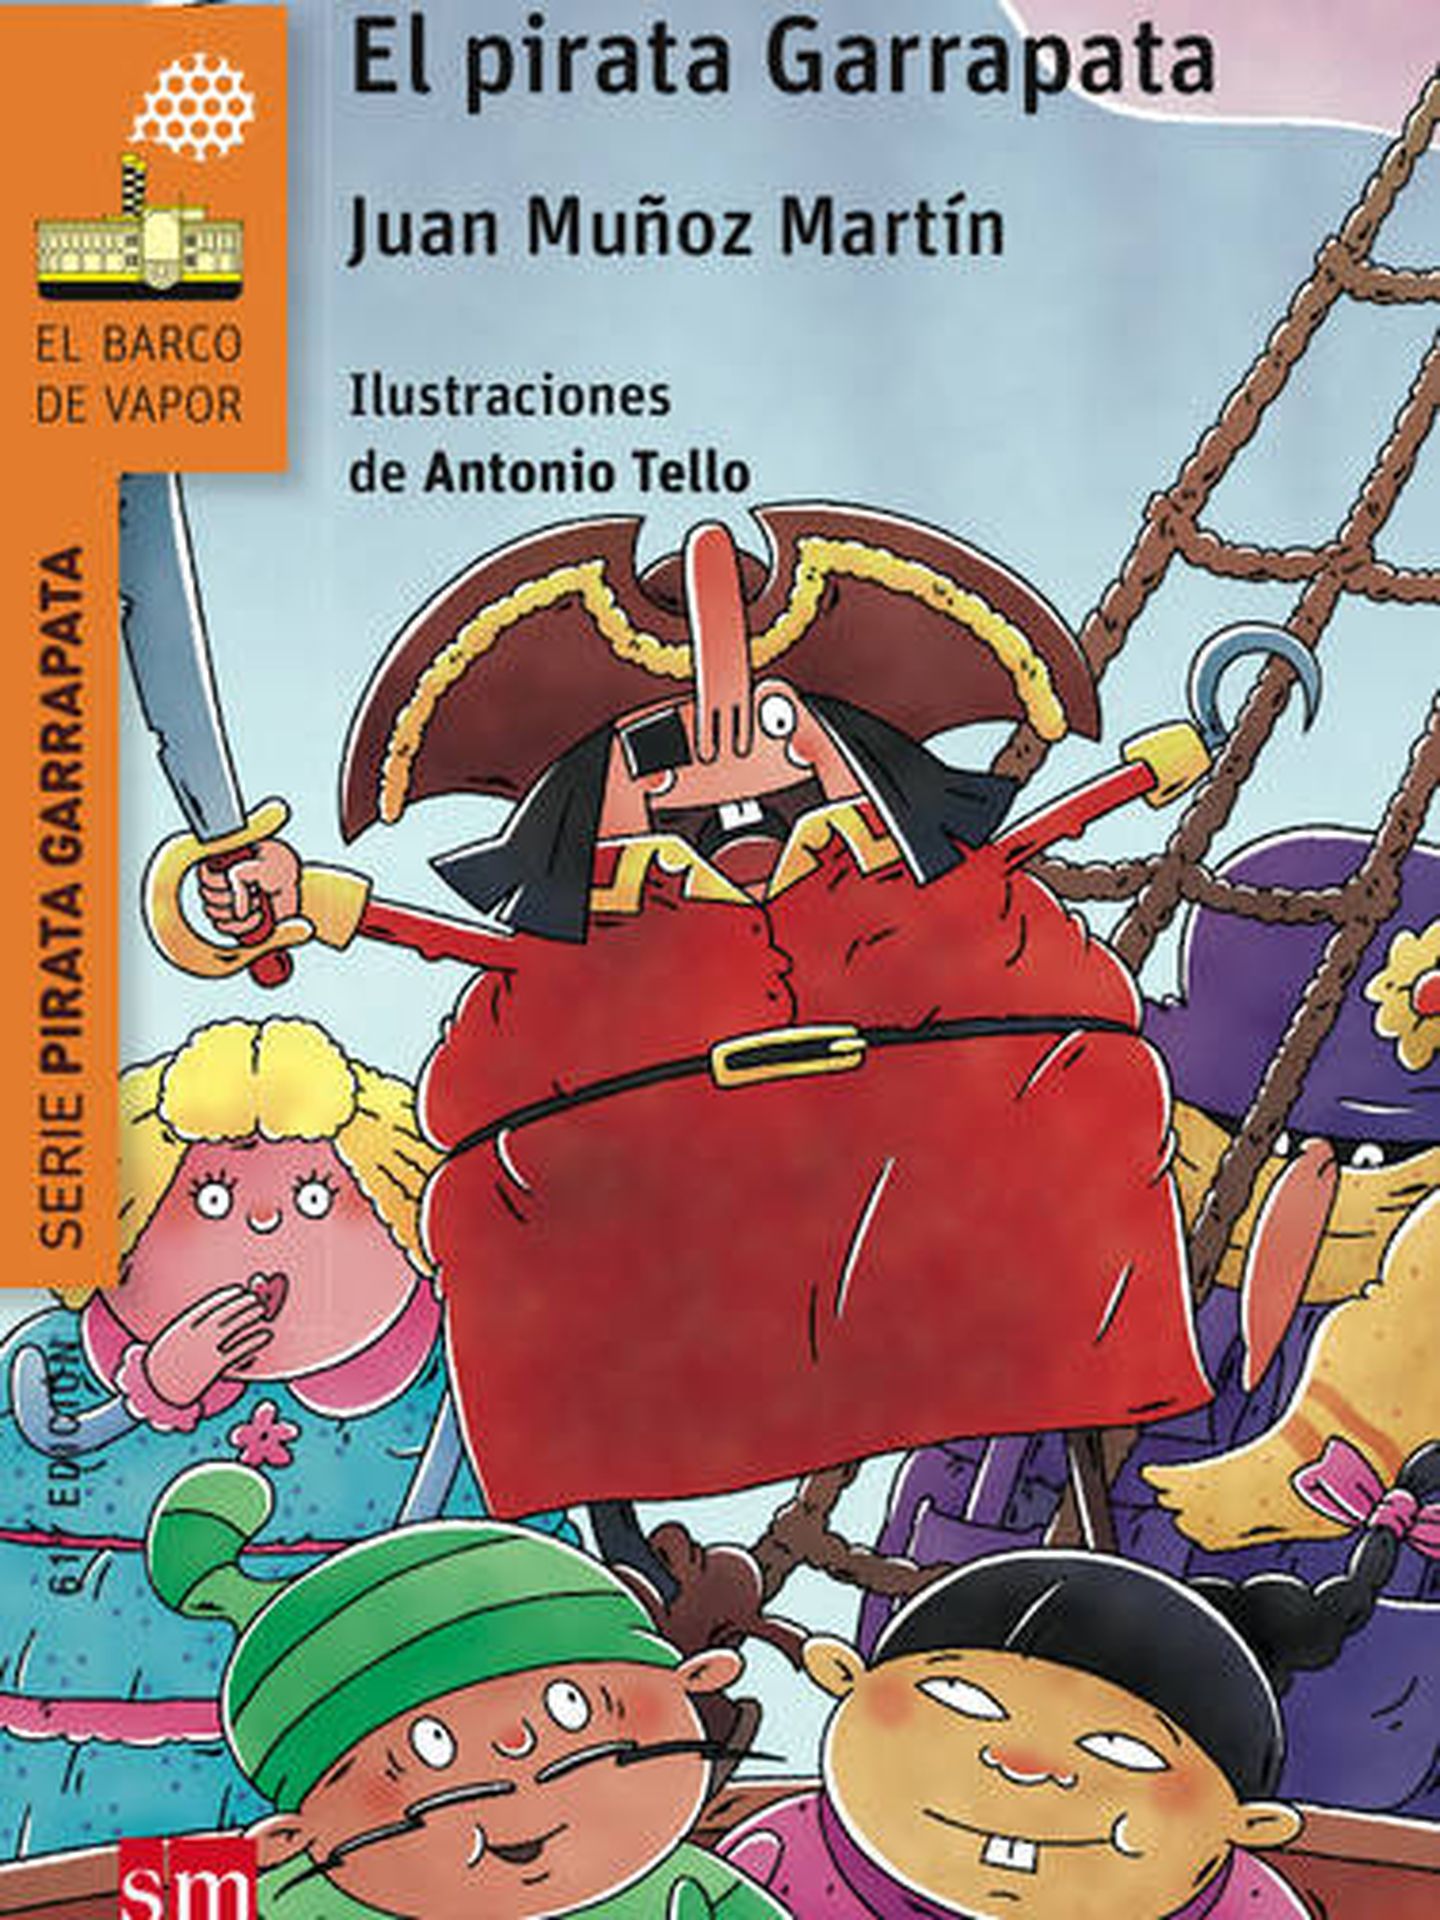 Edición renovada de 'El pirata Garrapata'.